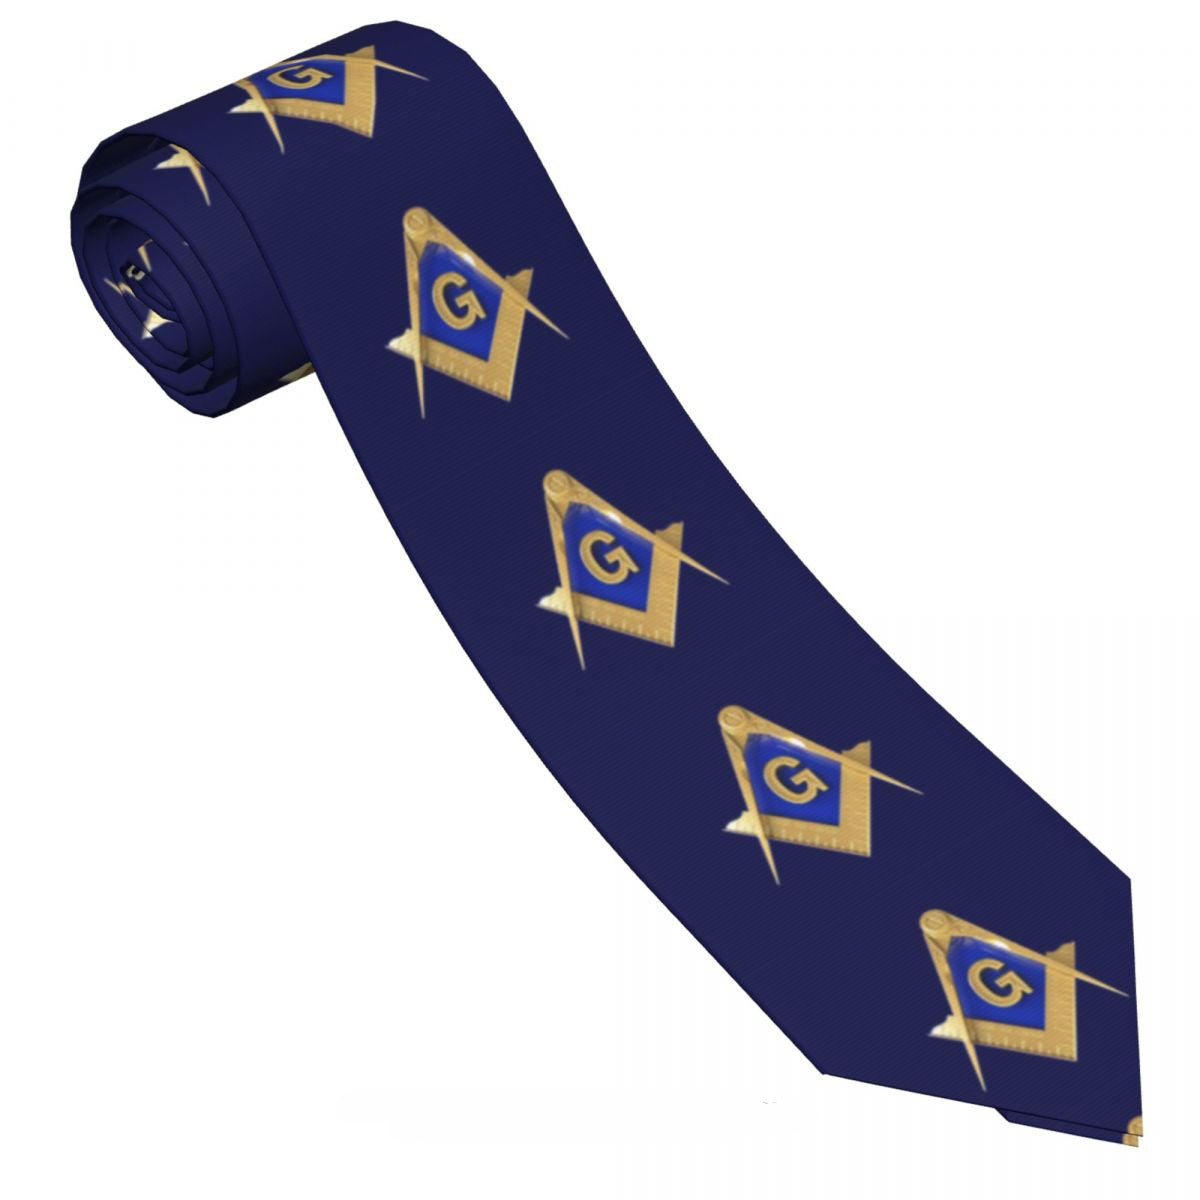 Master Mason Blue Lodge Necktie - Blue Background & Gold Emblem - Bricks Masons